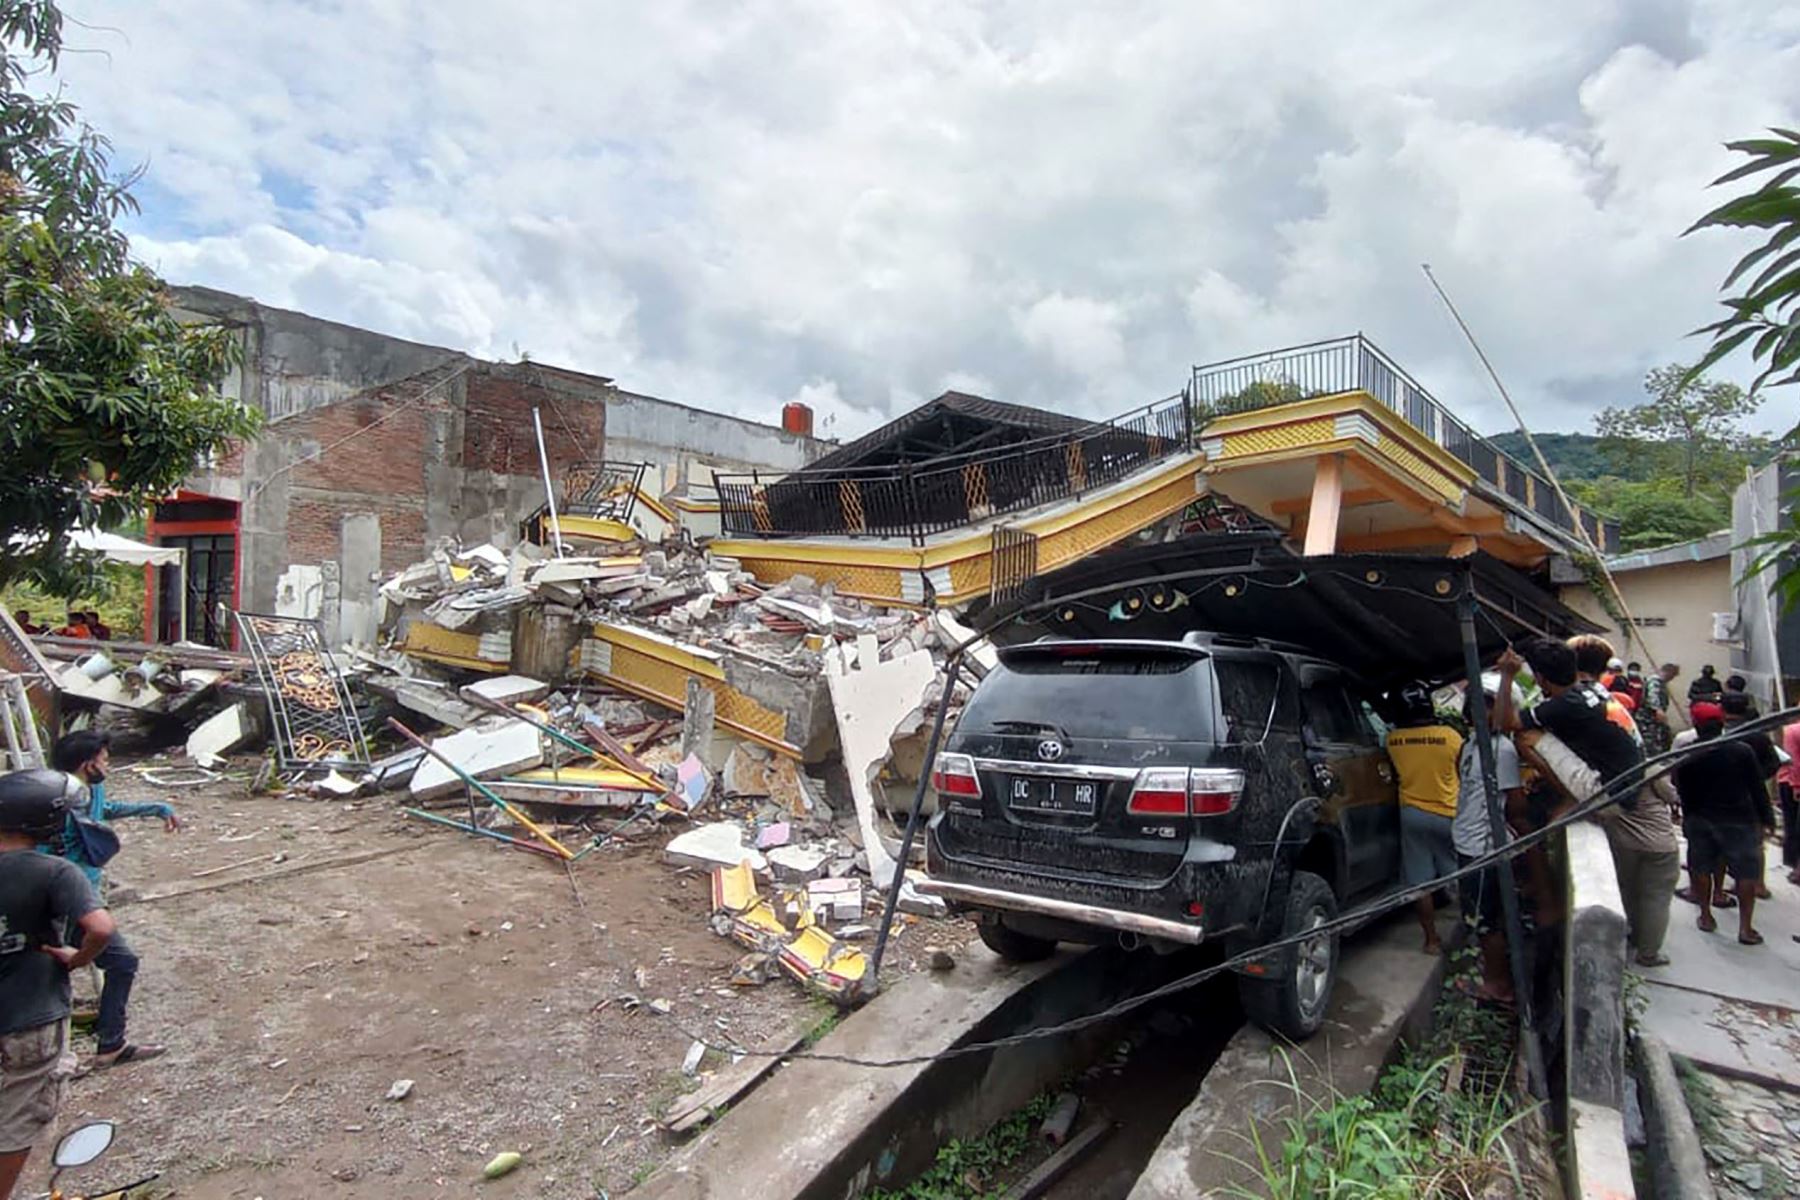 Un automóvil destruido se encuentra entre los escombros al costado de una calle en Mamuju, después de que un terremoto de magnitud 6.2 sacudiera la isla de Sulawesi en Indonesia. Foto: AFP